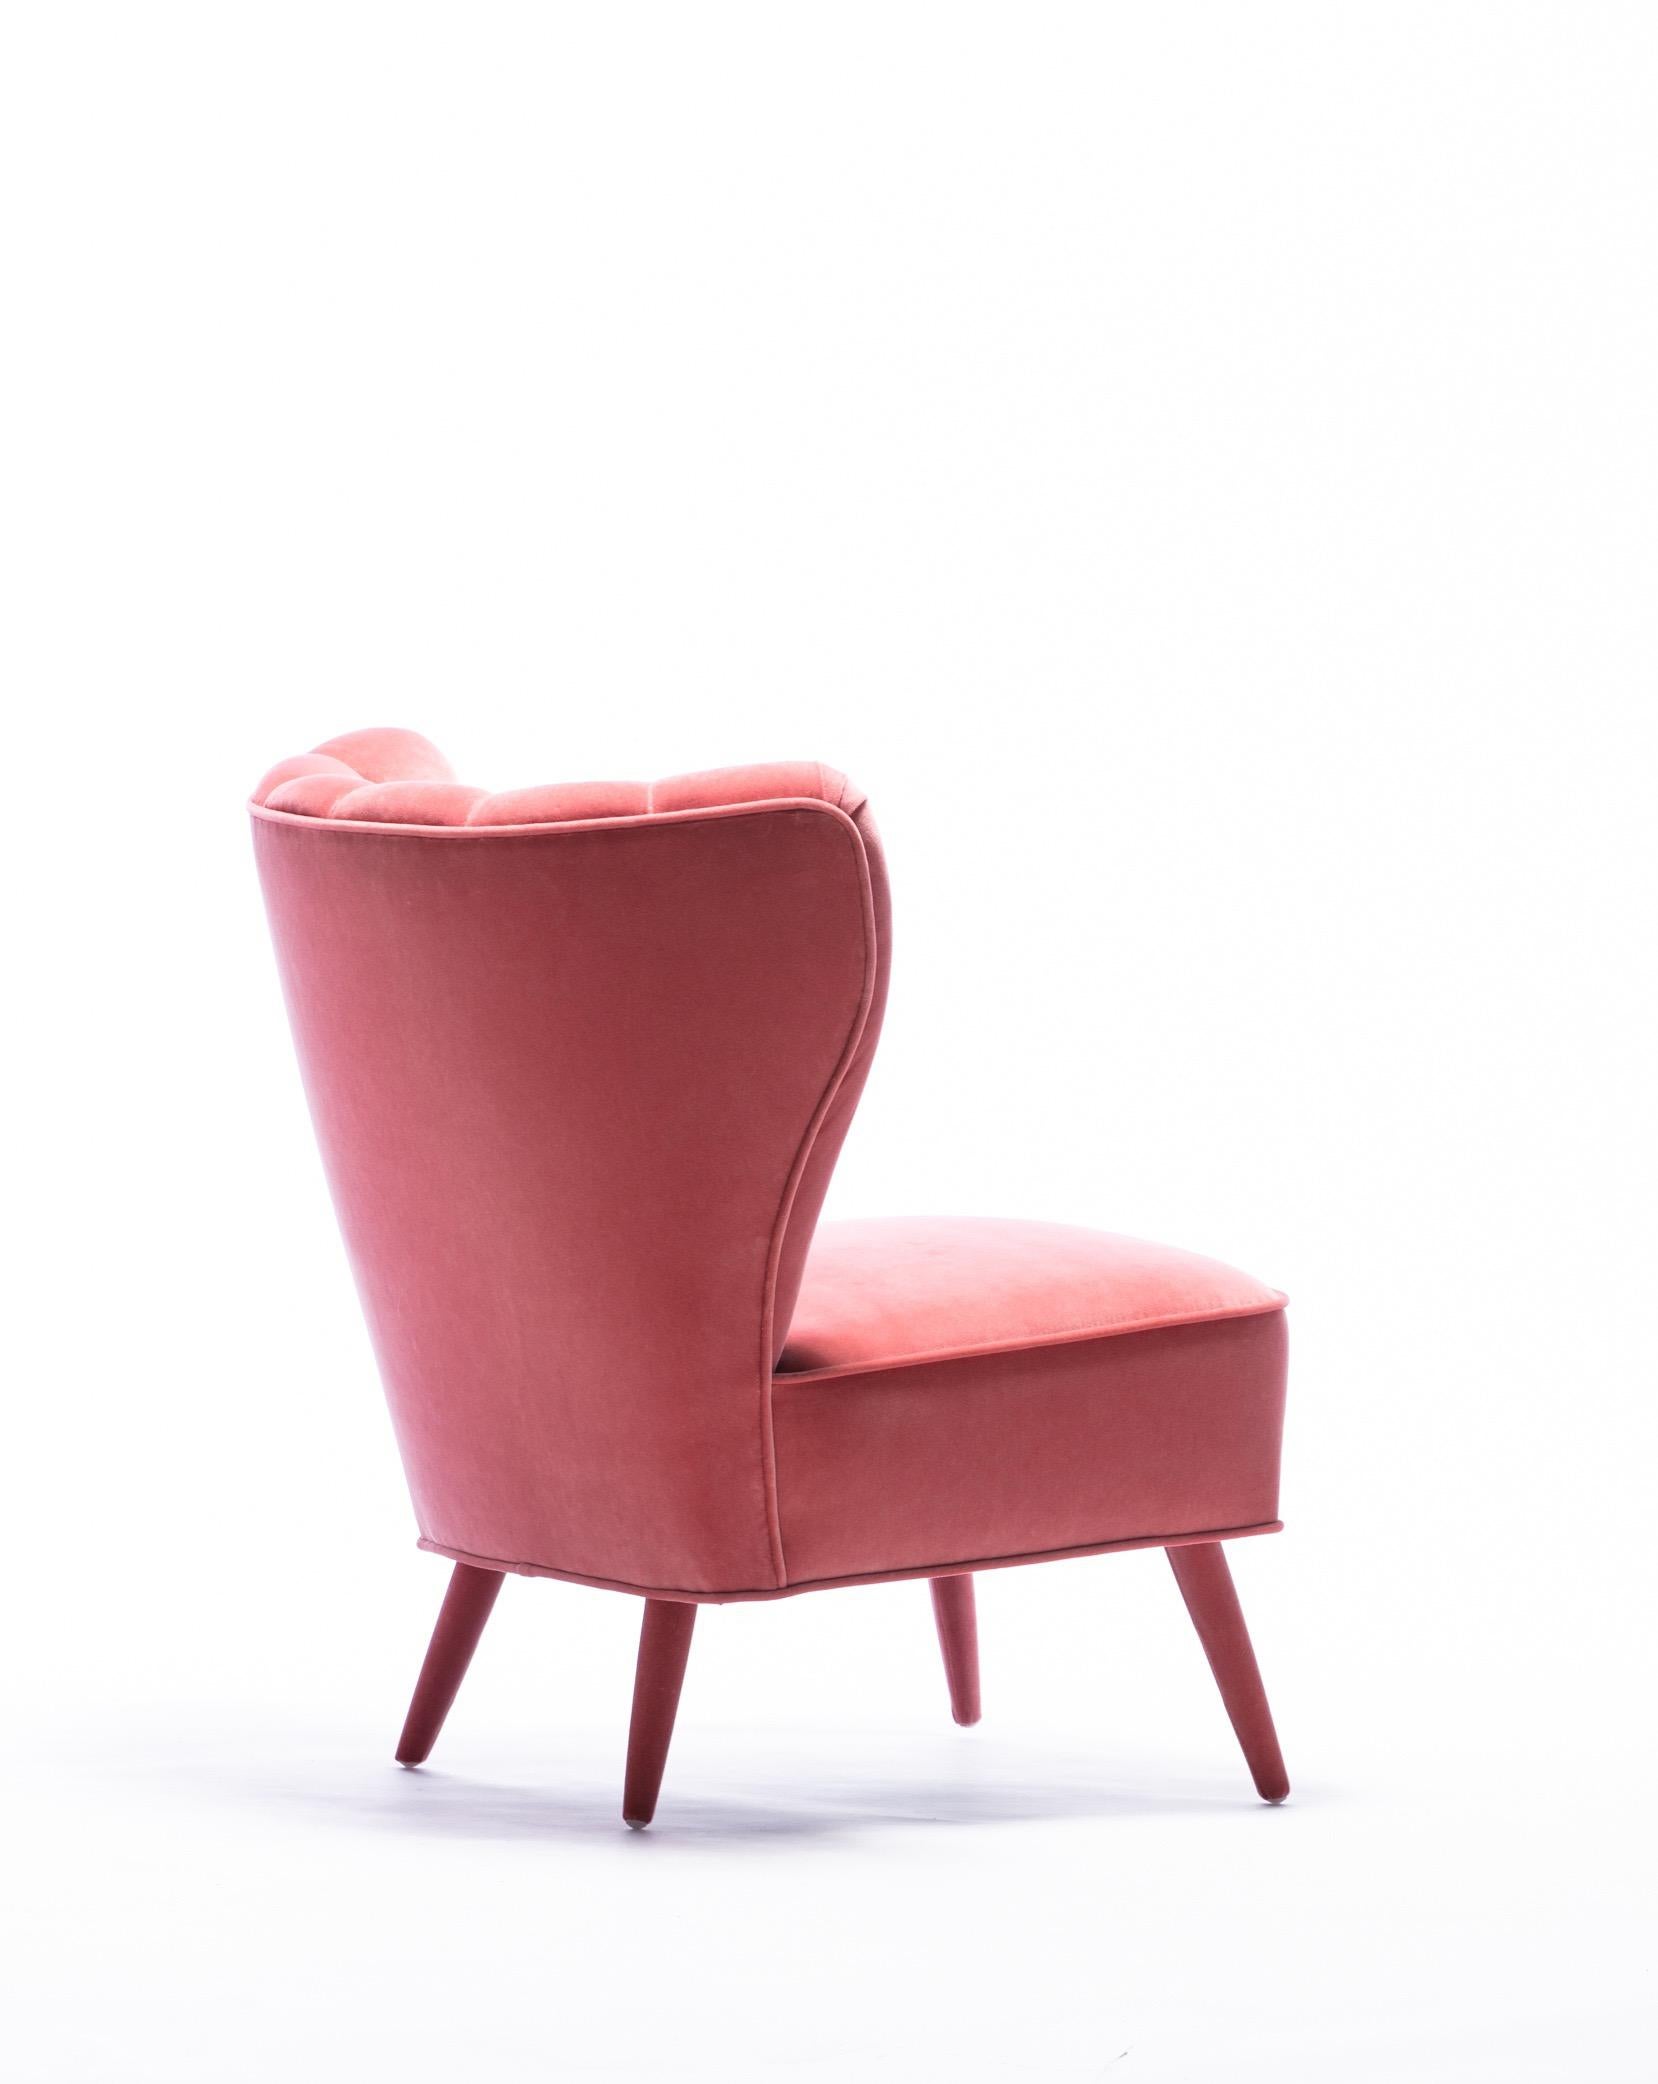 Hollywood Regency Chic Vintage Rose Pink Velvet Italian Slipper Chair, circa 1950